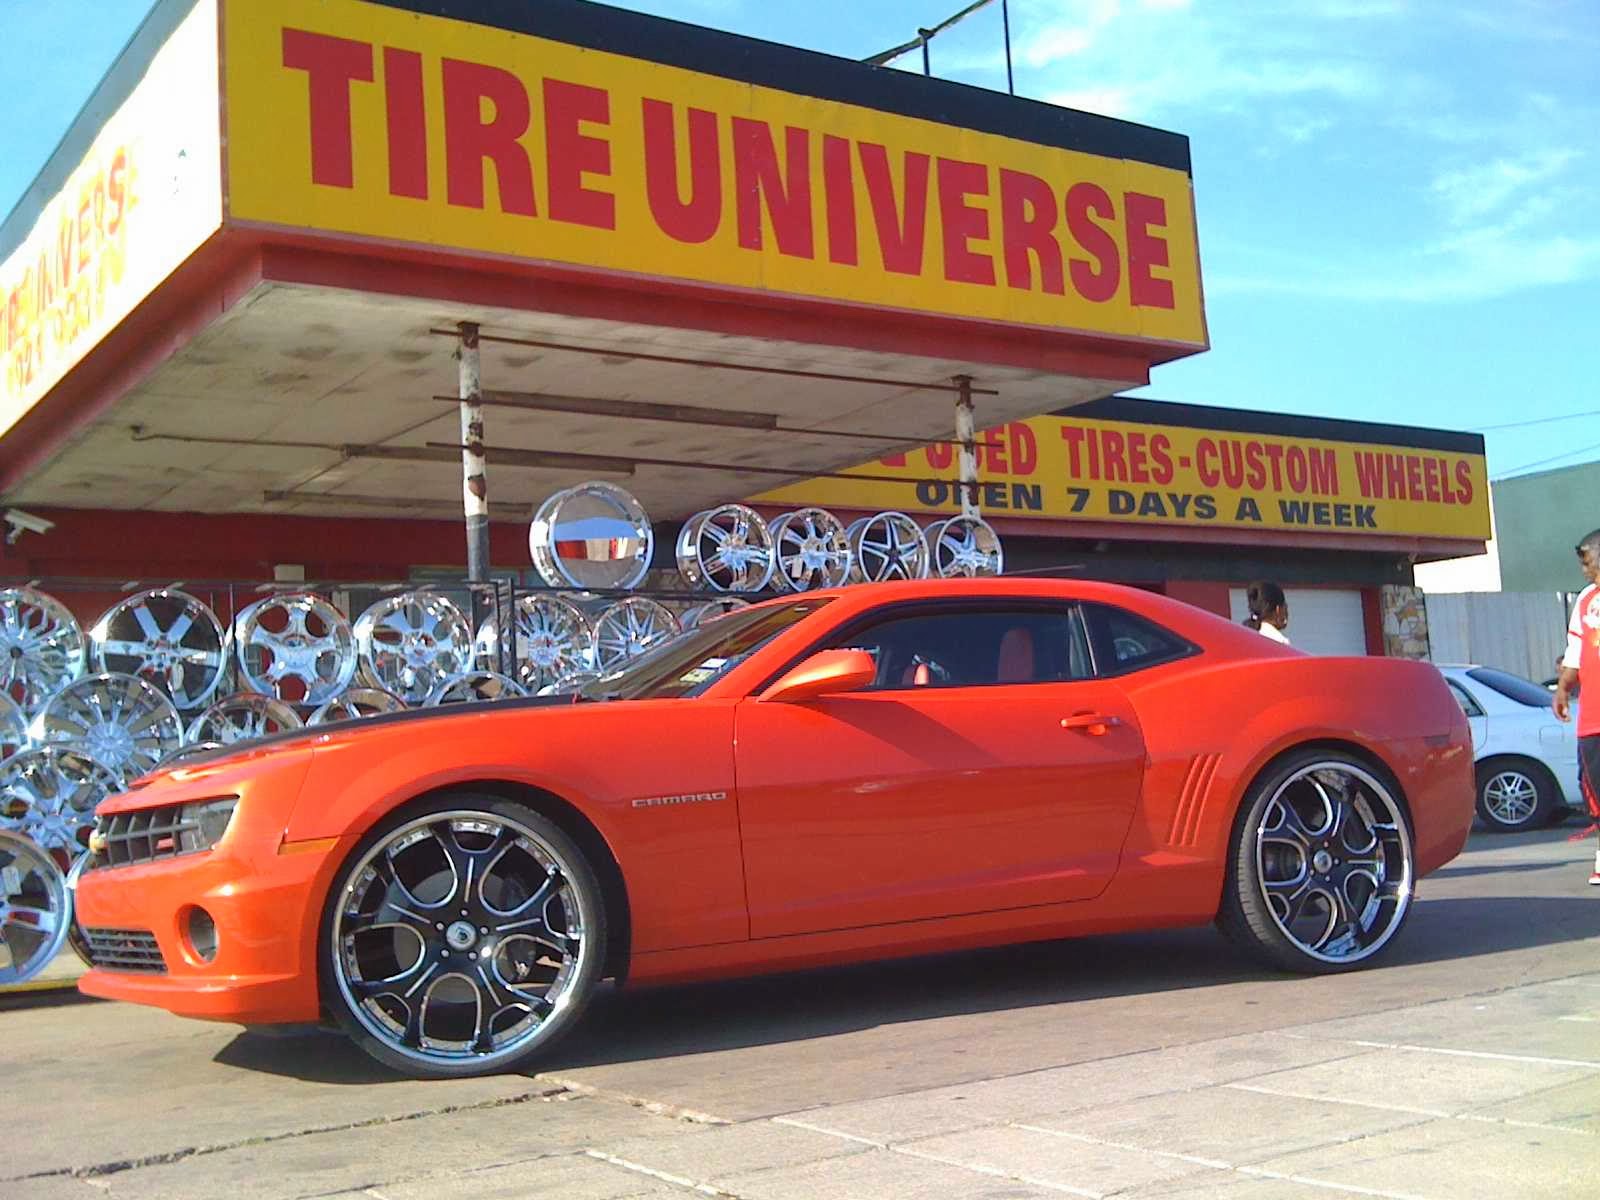 Tire Universe